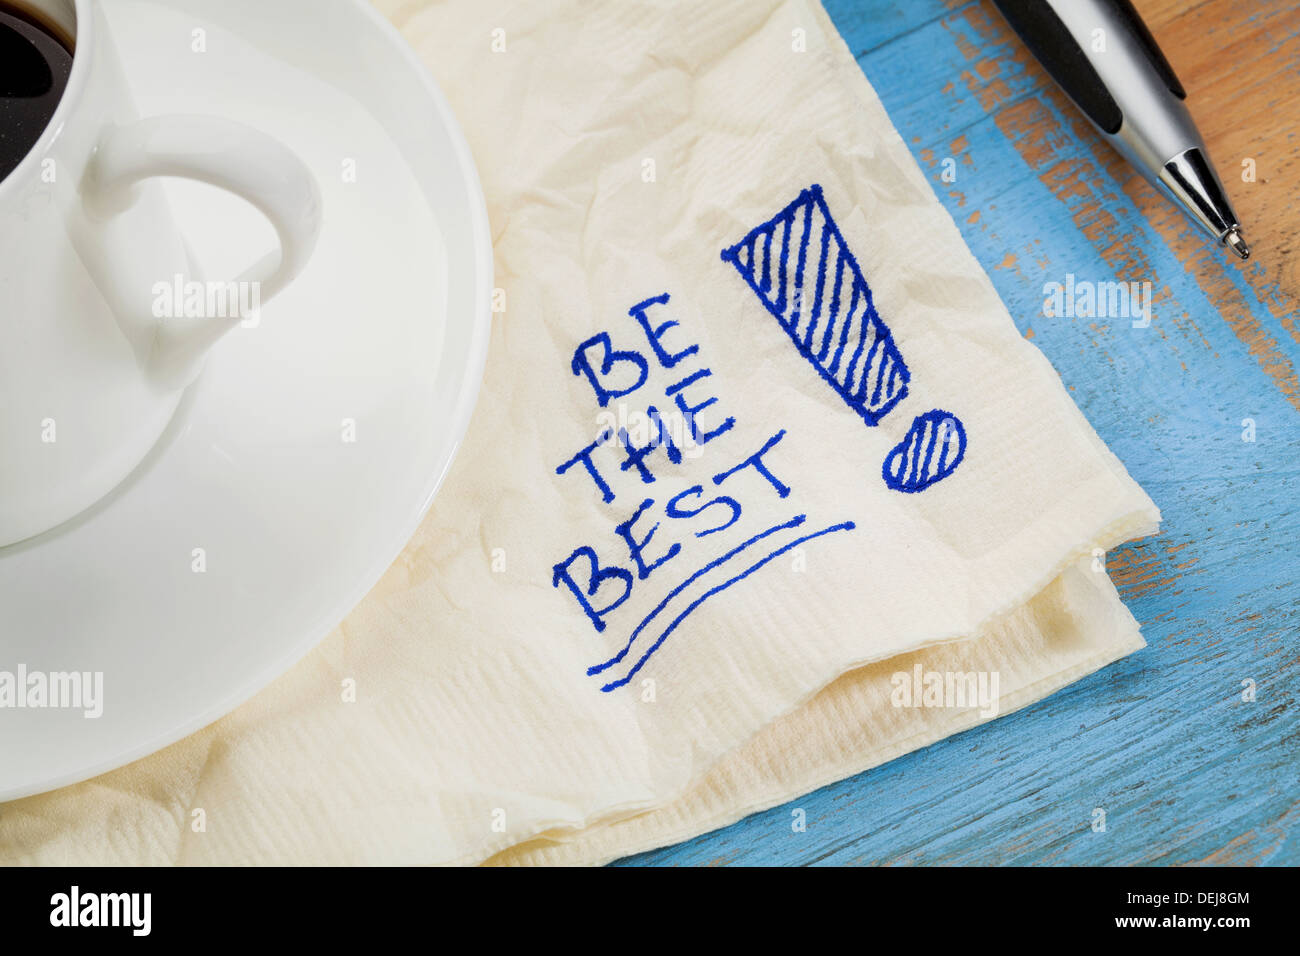 das beste - Motivations Slogan auf einer Serviette mit Tasse Kaffee Stockfoto